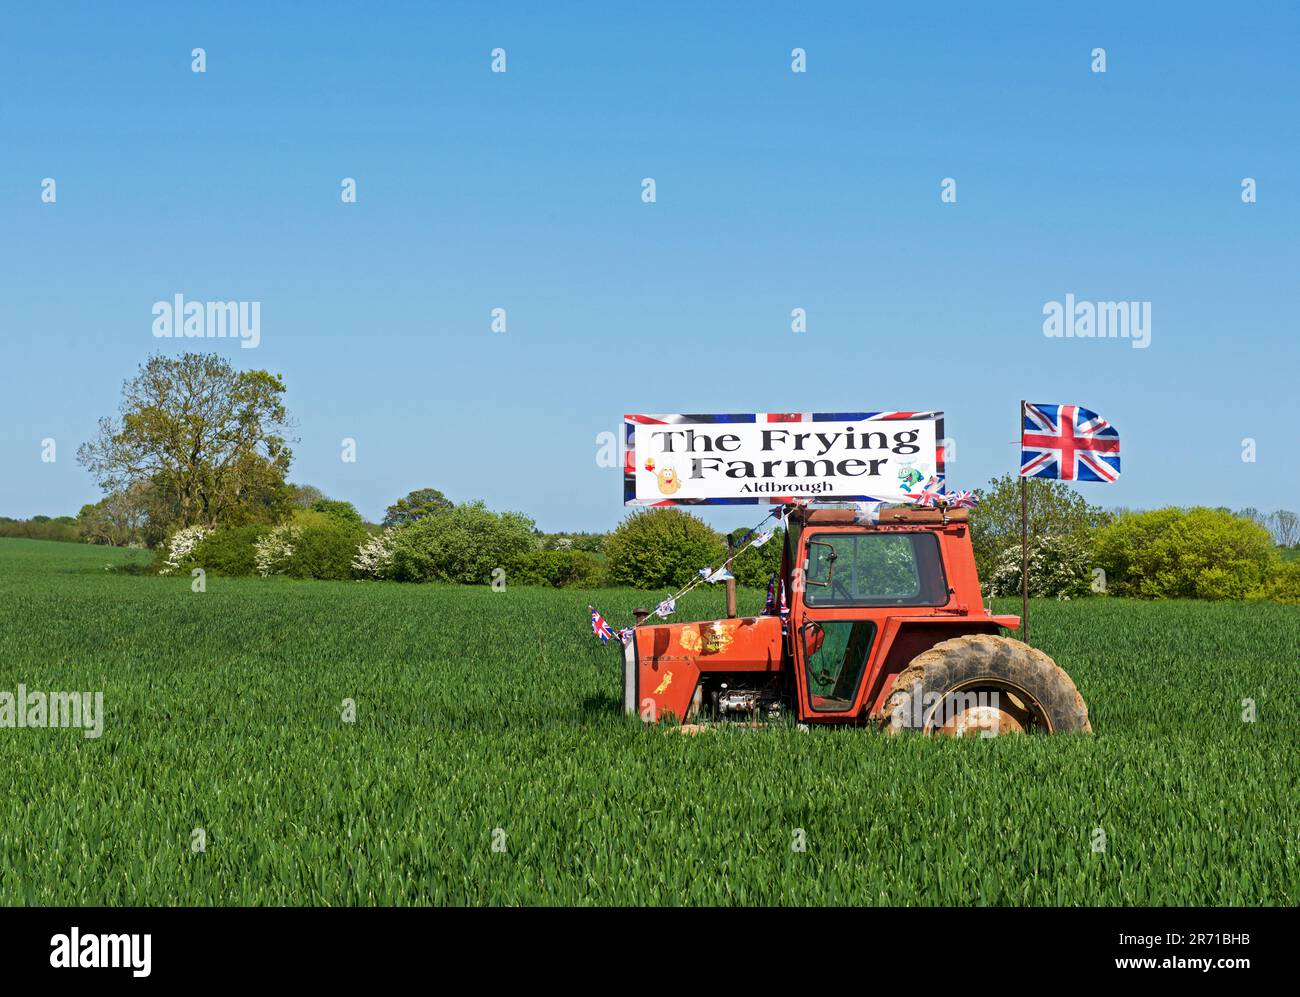 Werbebanner auf altem Traktor, das für den Frying Farmer Fish & Chip Shop in Aldbrough, Holderness, East Yorkshire, England, wirbt Stockfoto